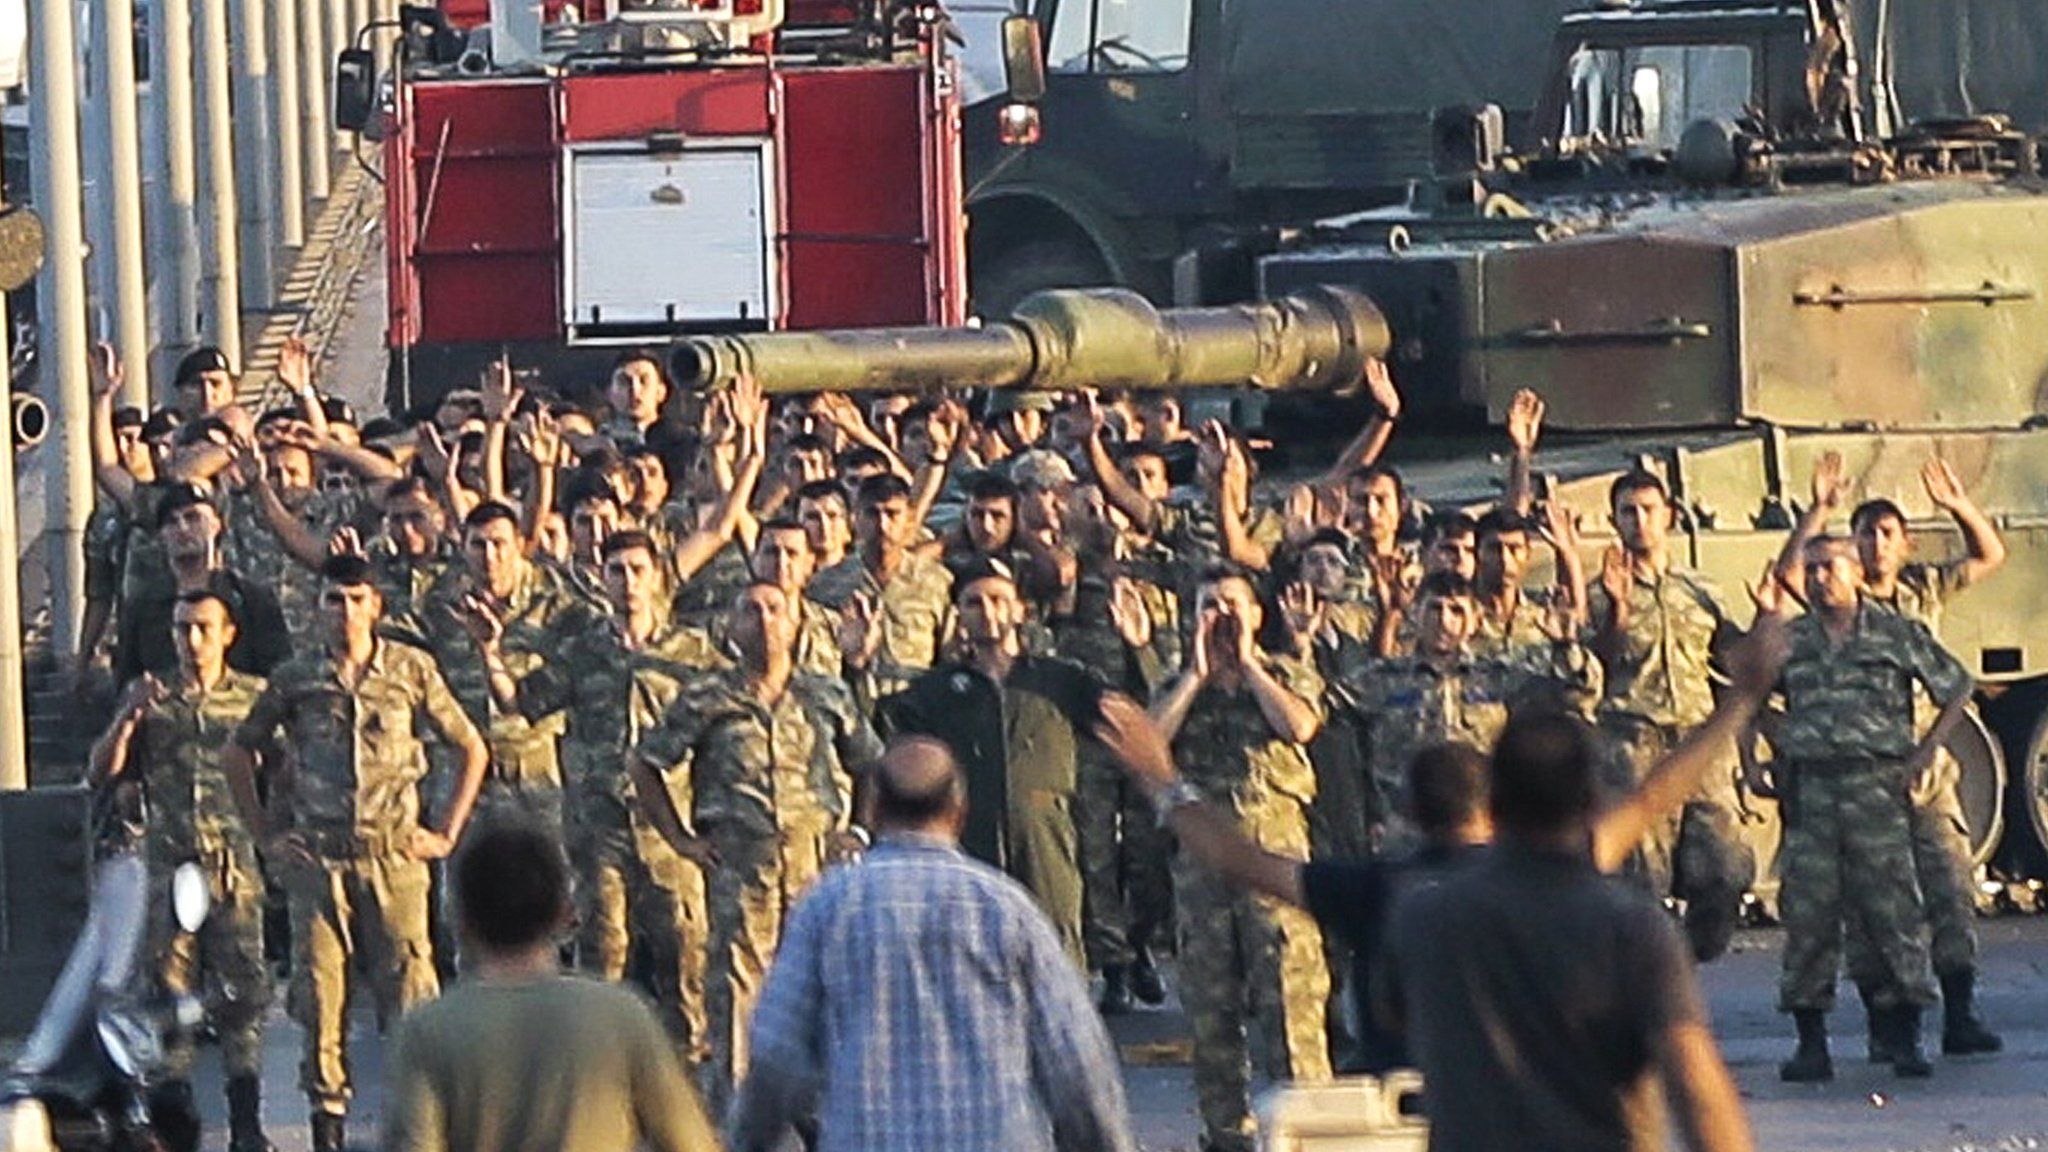 Soldiers surrender on Bosphorus bridge, Istanbul, on 16 July 2016